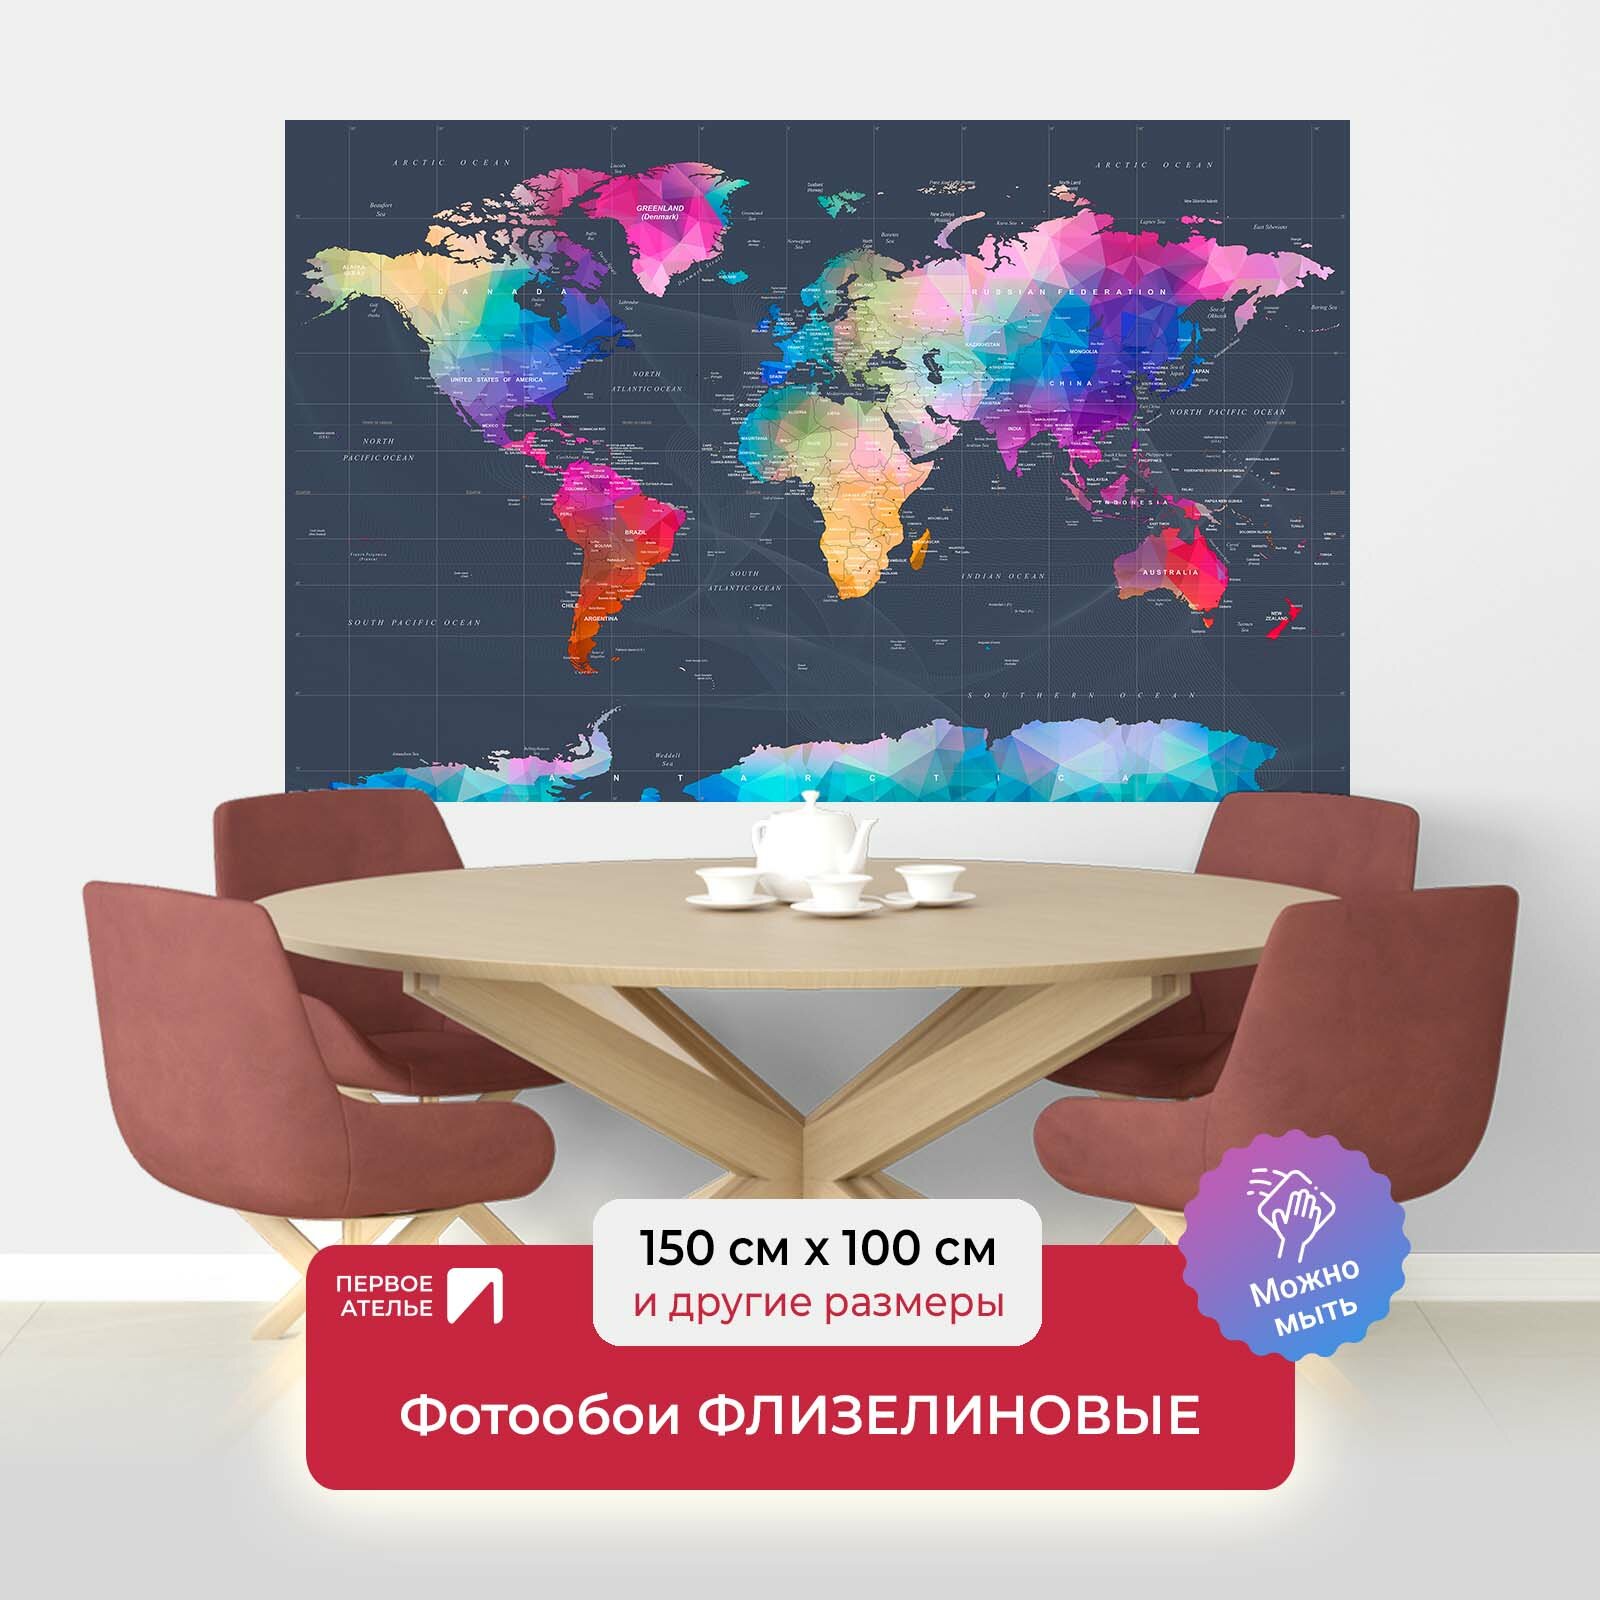 Фотообои на стену первое ателье "Карта континентов разноцветная" 150х100 см (ШхВ), флизелиновые Premium